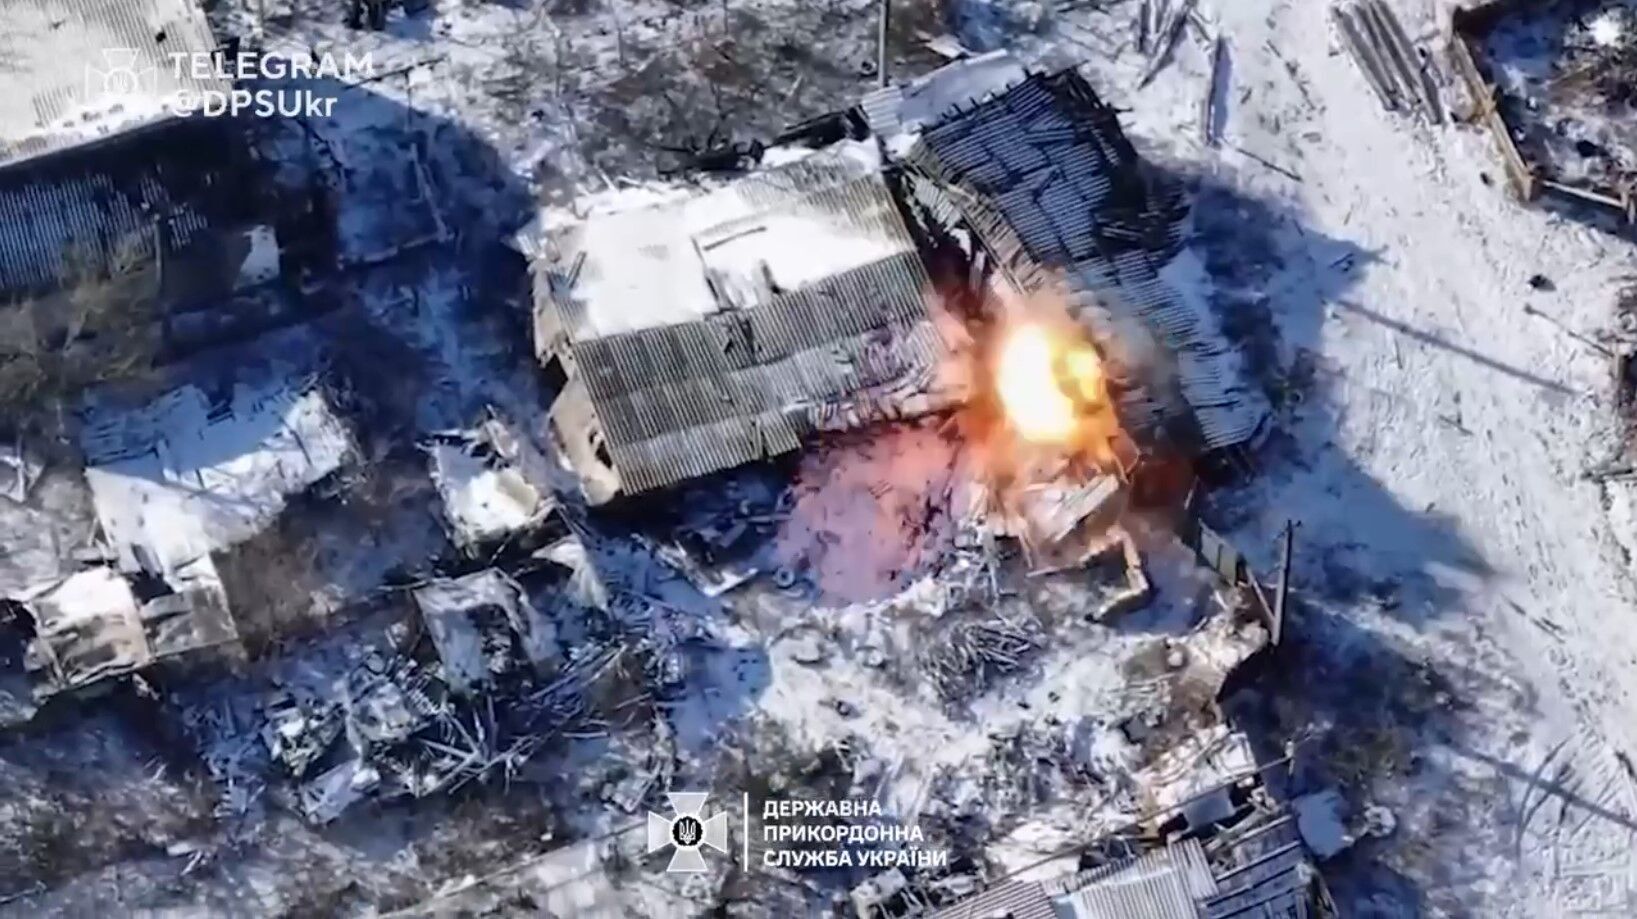 1:0 в пользу FPV-дрона: херсонские пограничники уничтожили замаскированный вражеский автомобиль. Видео